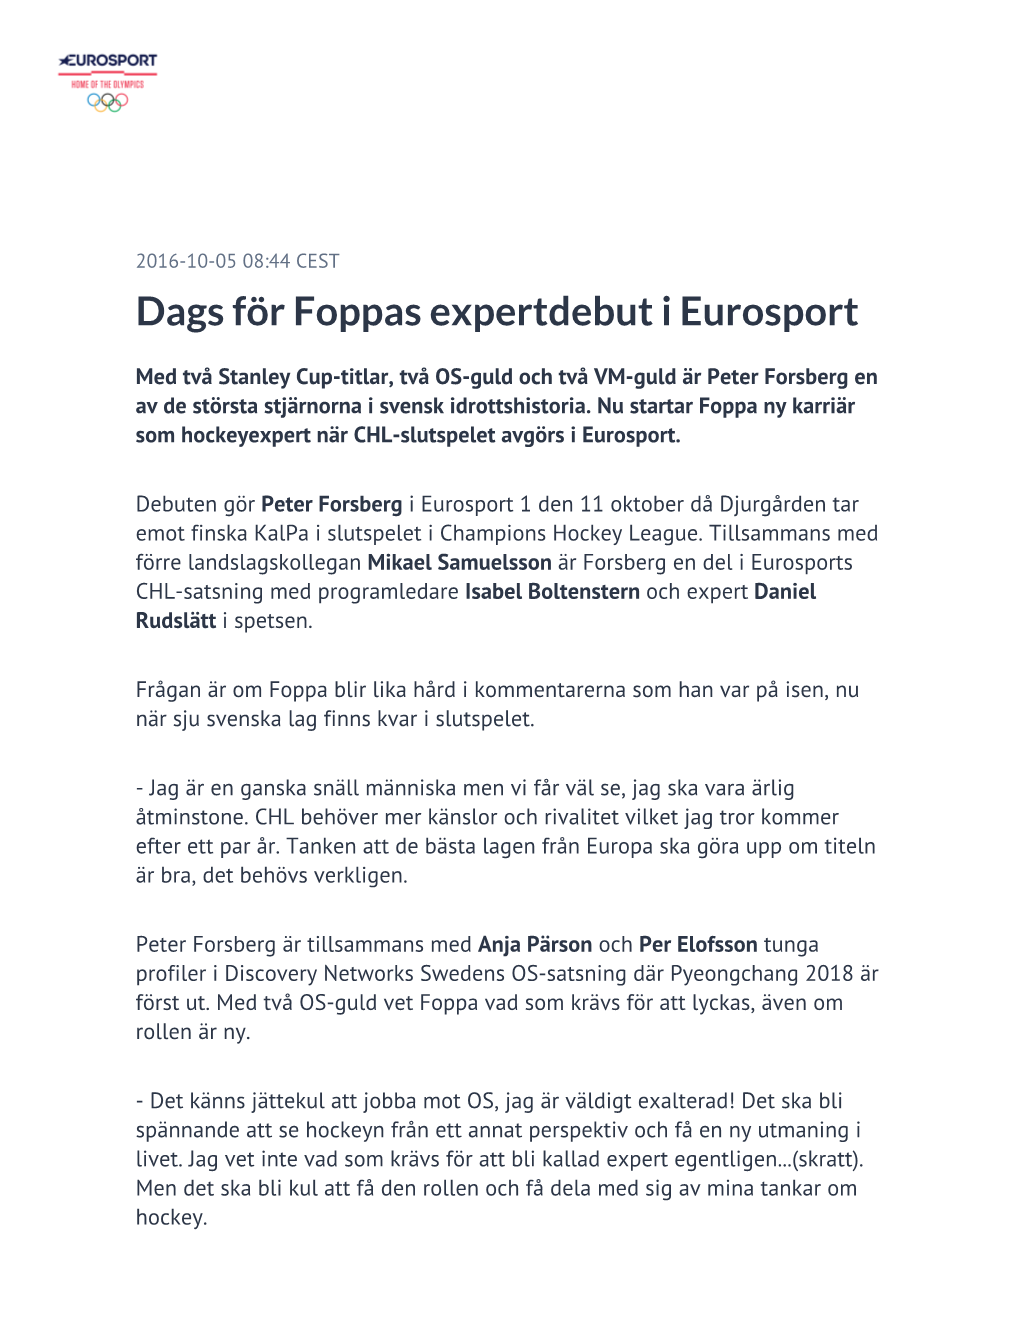 ​Dags För Foppas Expertdebut I Eurosport